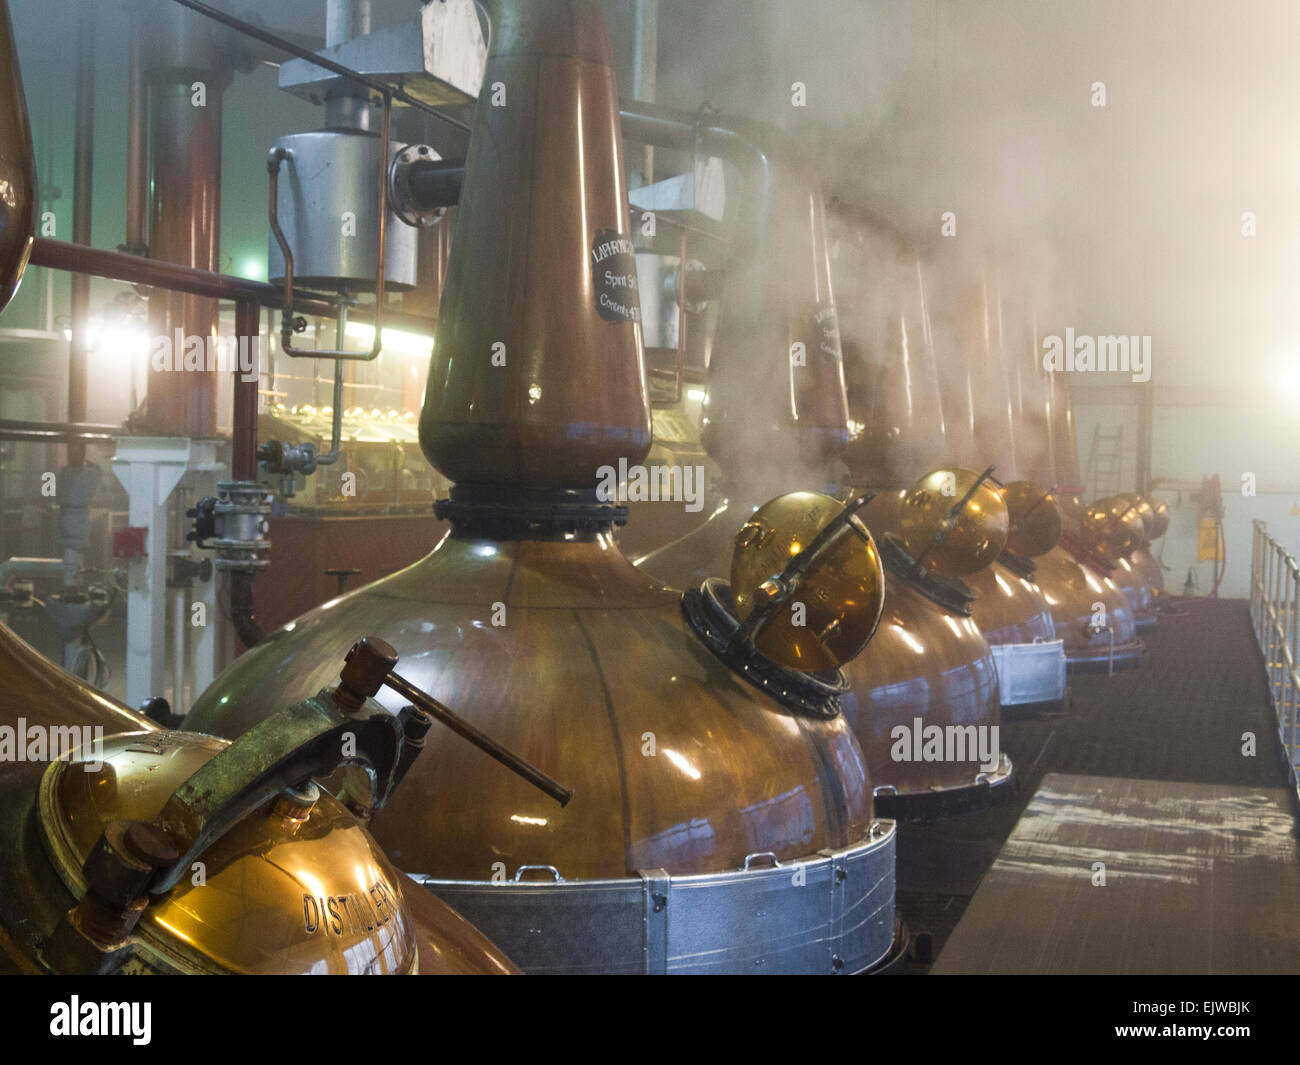 La distillerie de laphroaig alambics en cuivre a l' intérieur du processus de distillation Banque D'Images